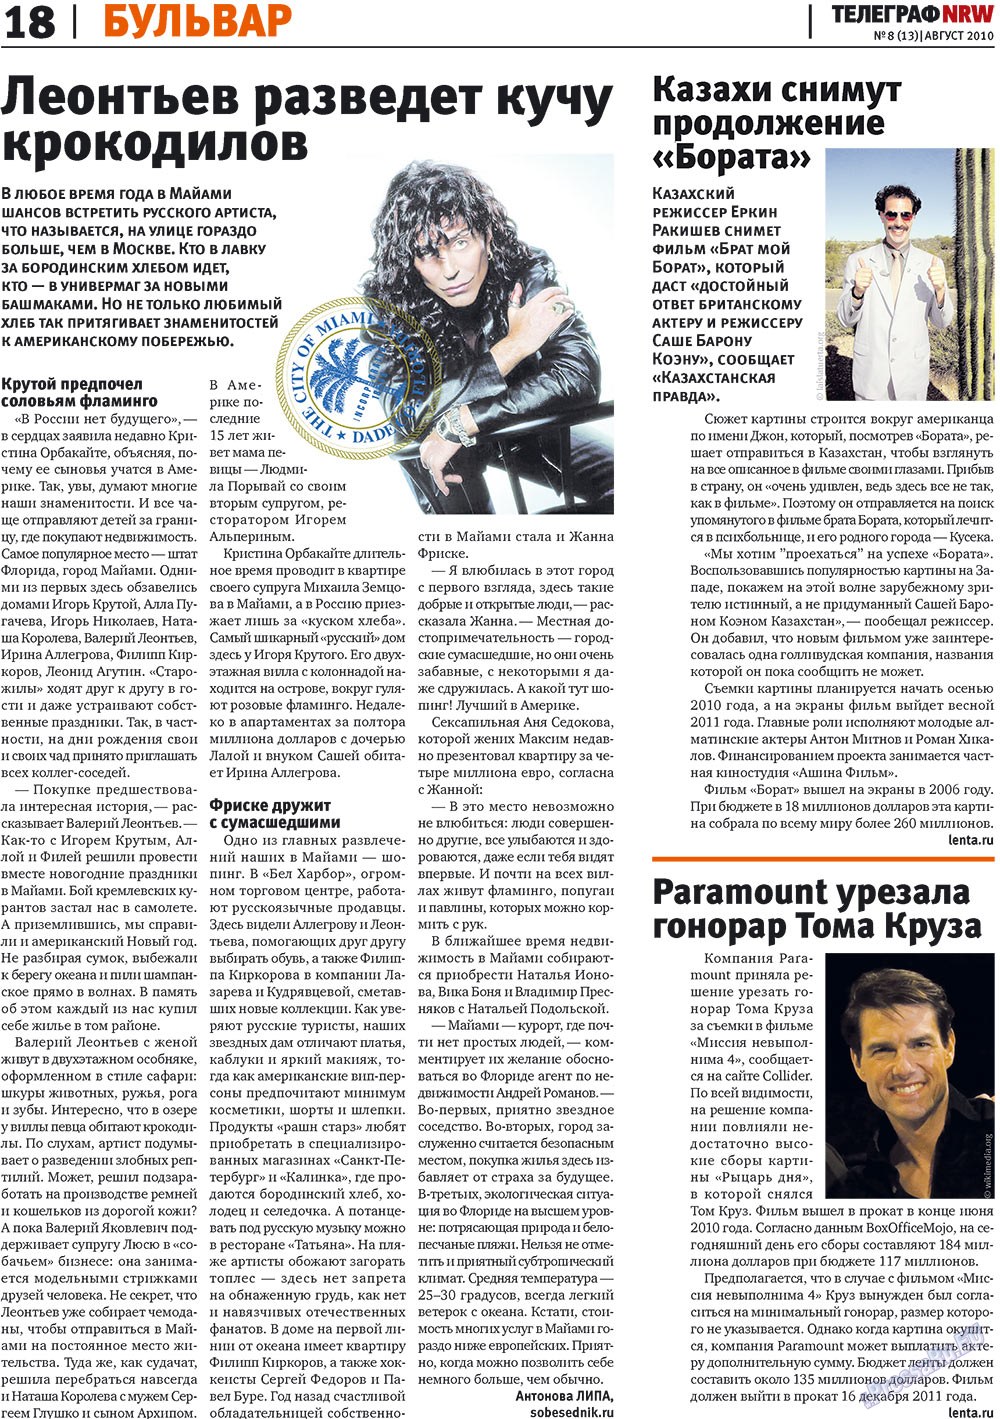 Телеграф NRW (газета). 2010 год, номер 8, стр. 18